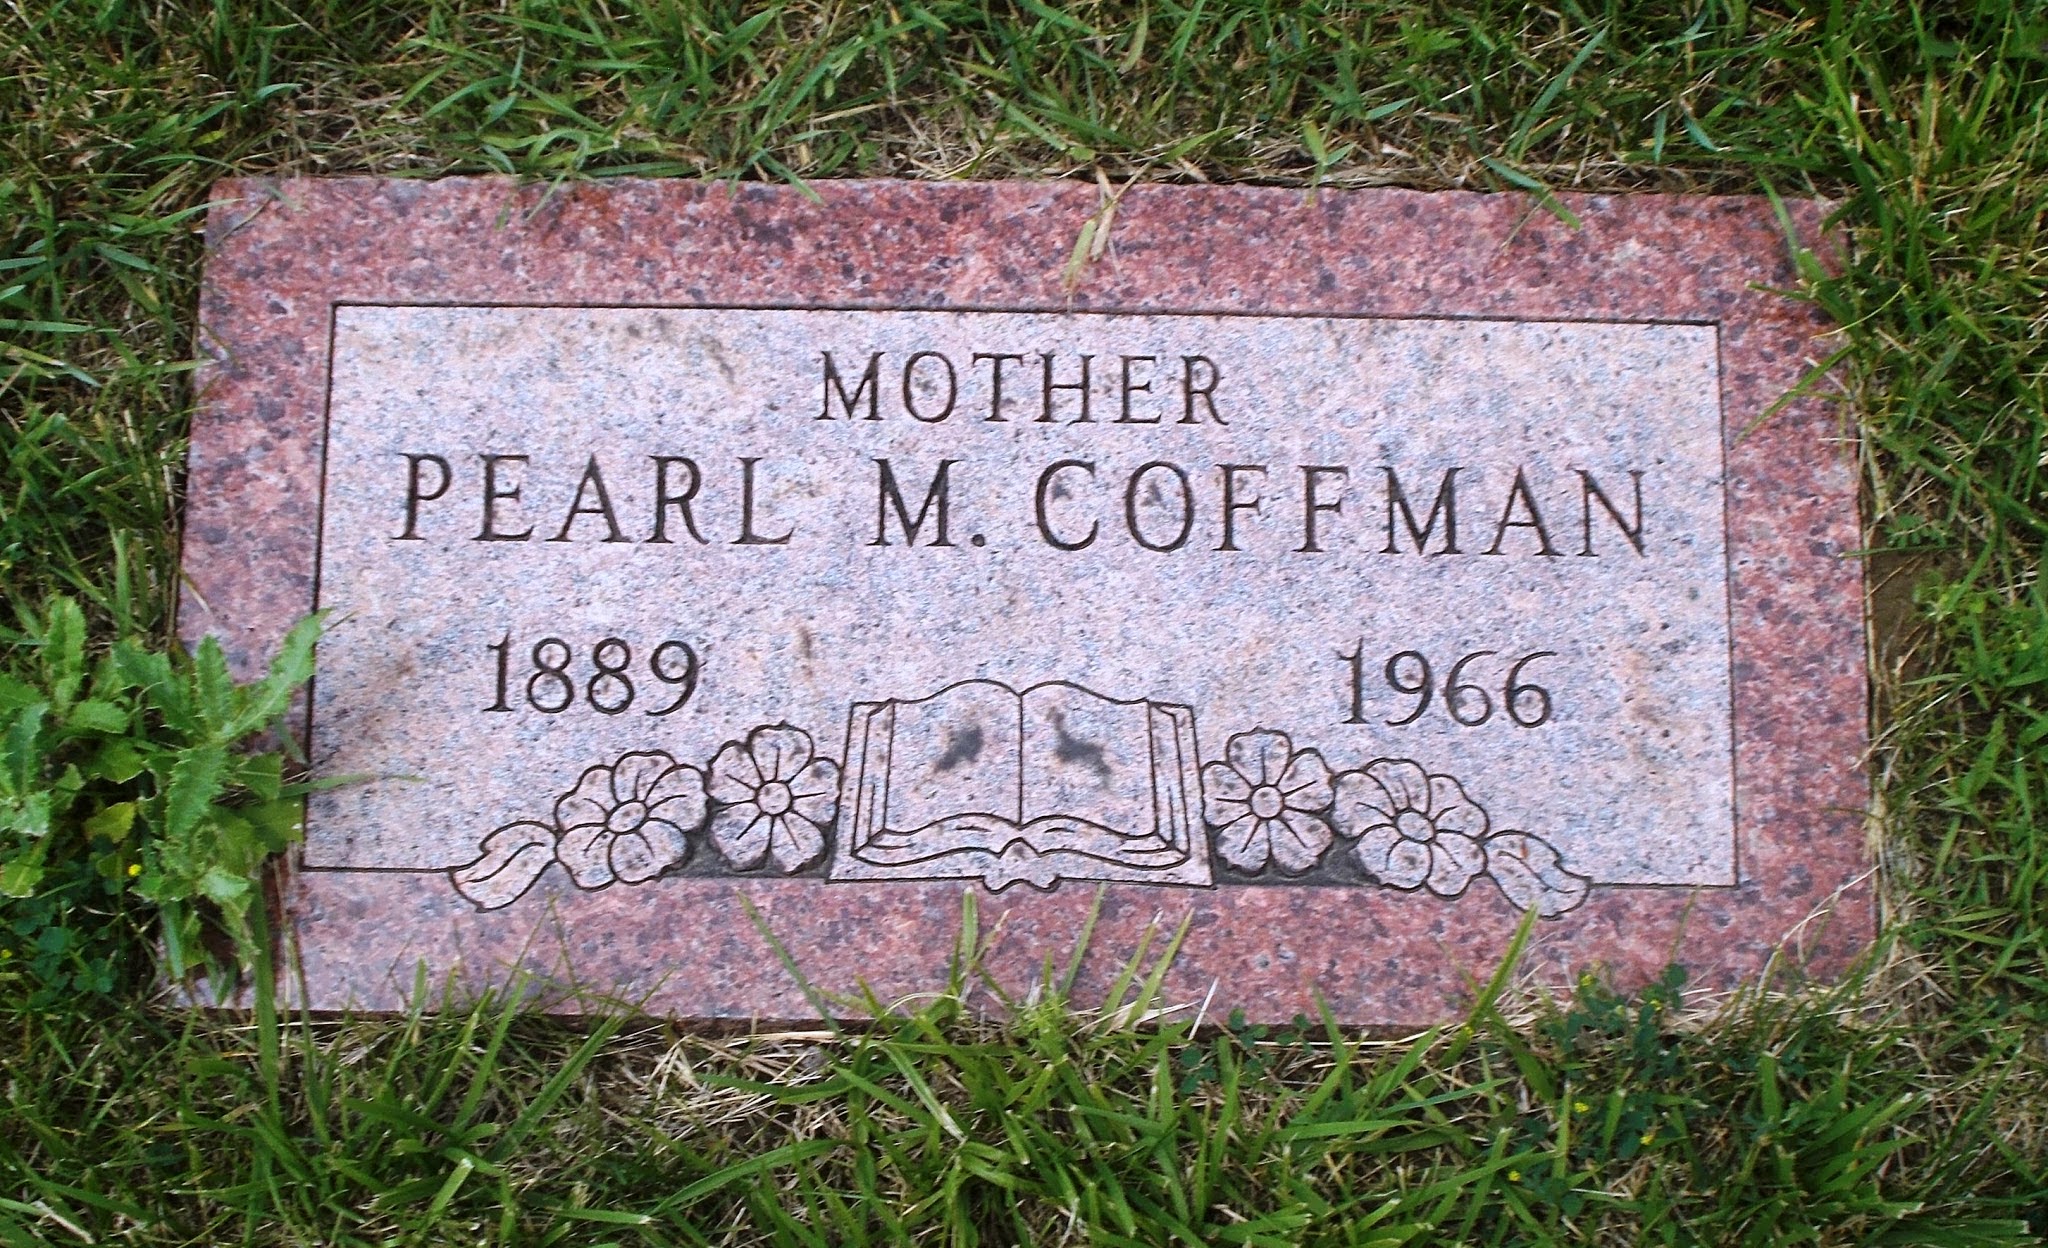 Pearl M Coffman